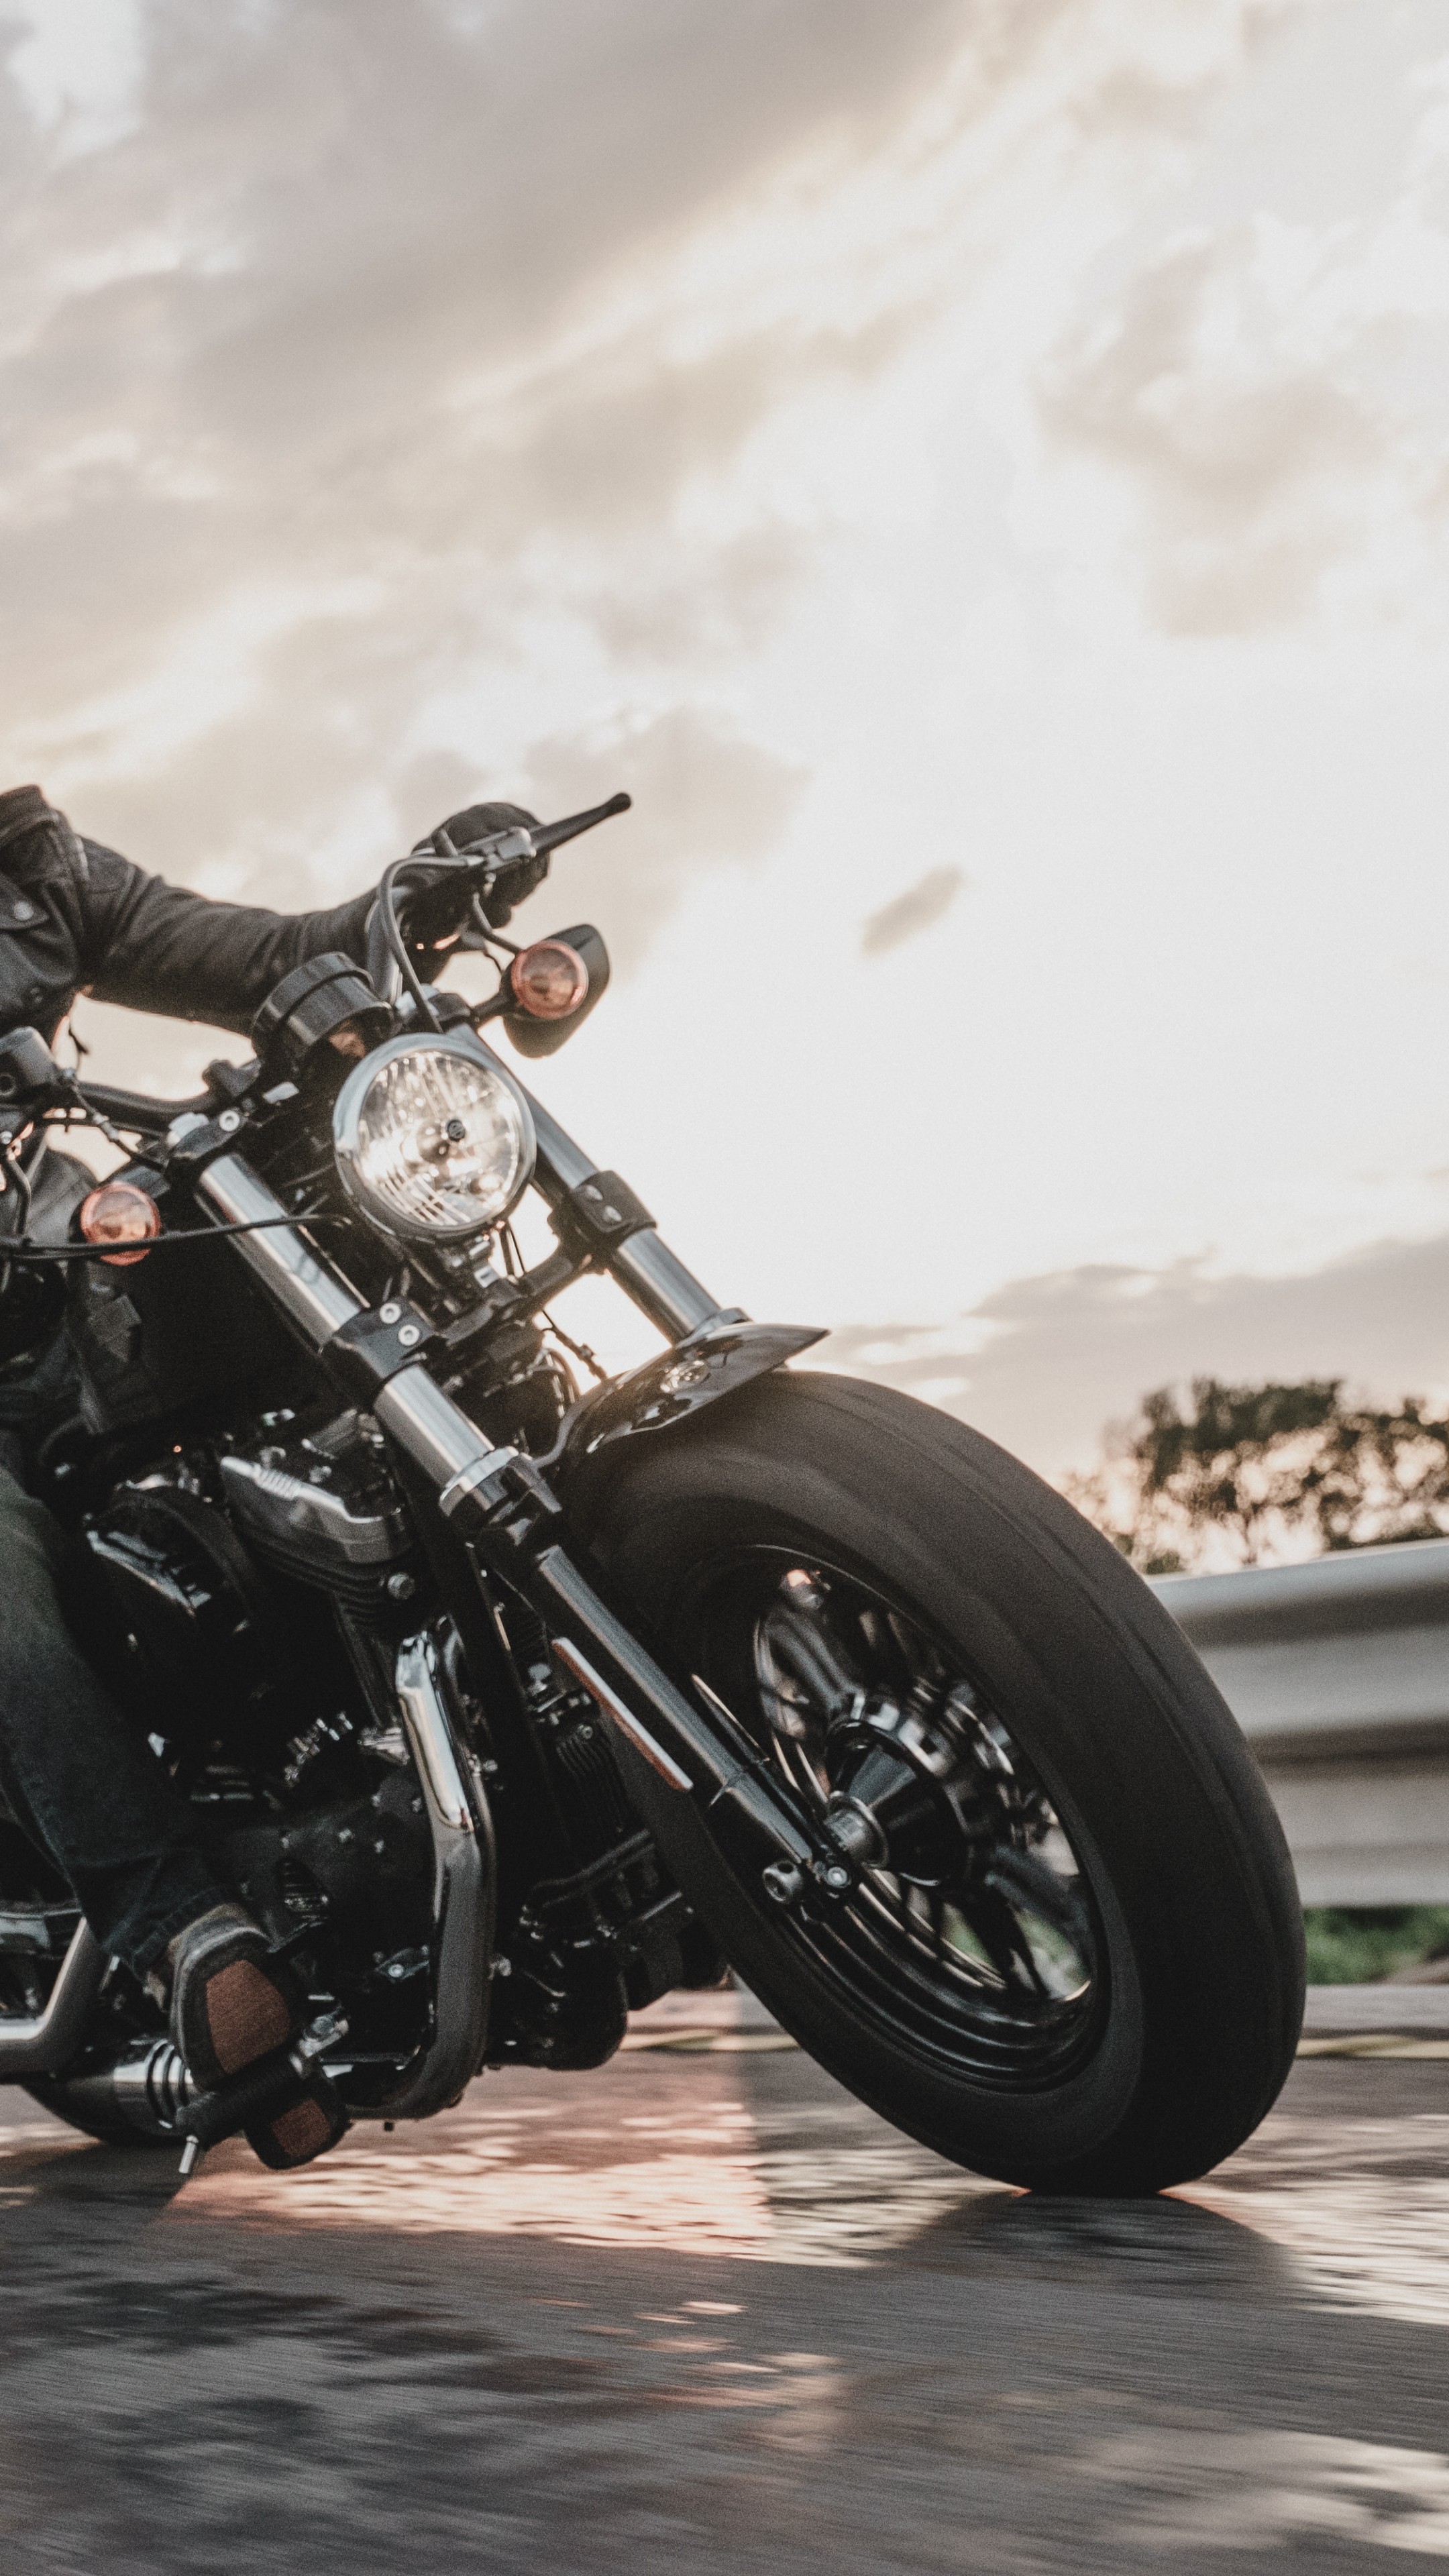 Wallpaper Harley Davidson Iron black, bike year 2016